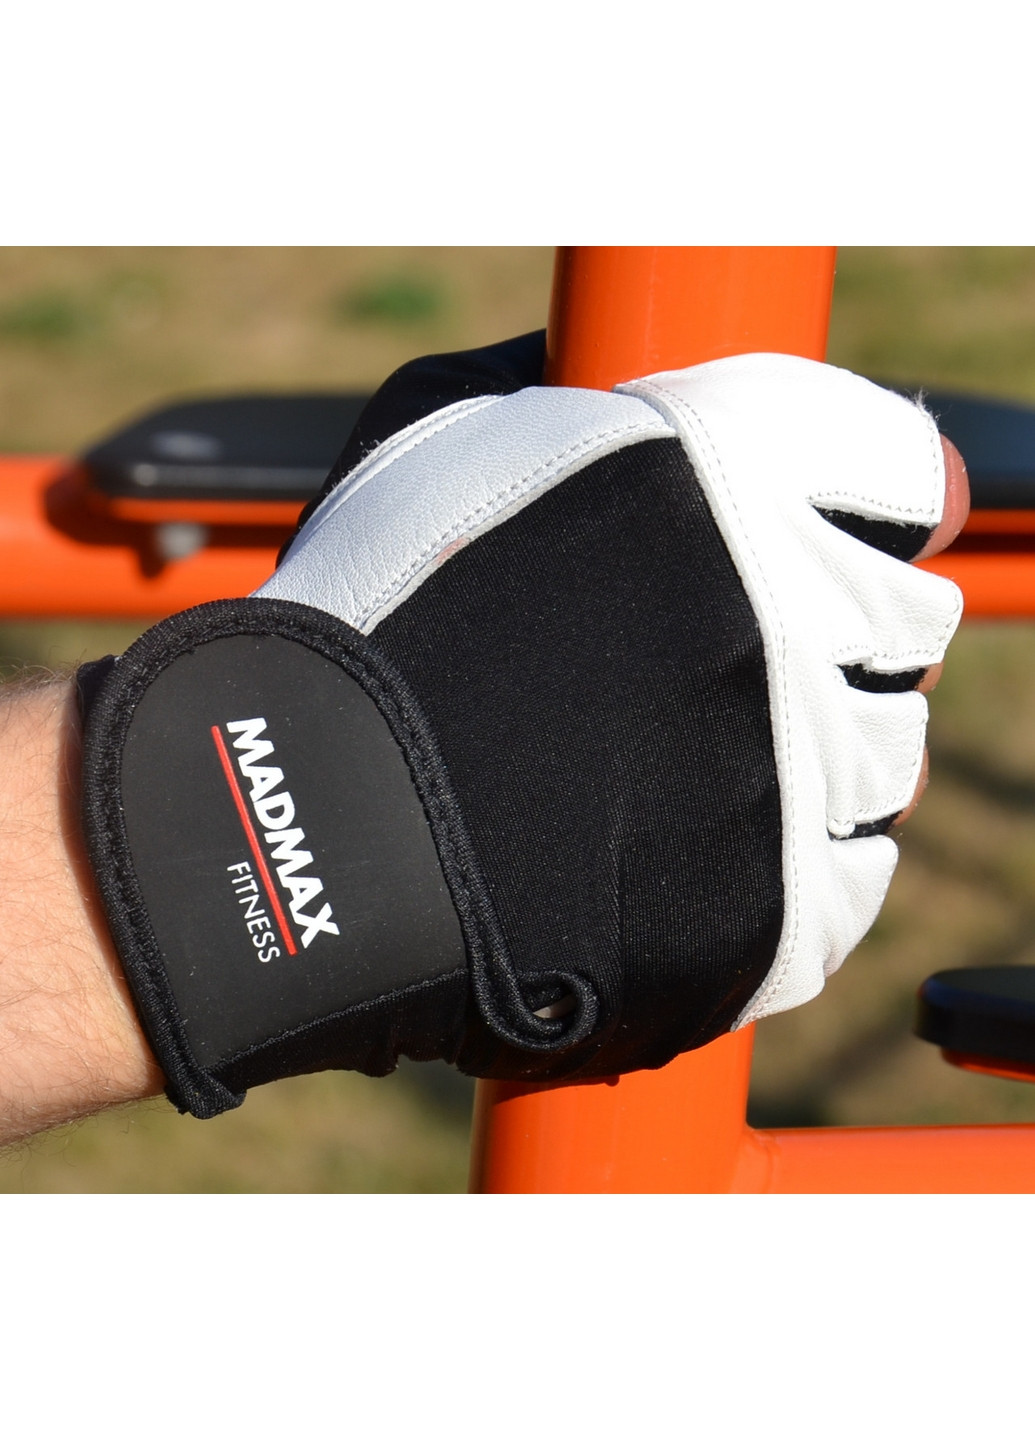 Унисекс перчатки для фитнеса XL Mad Max (267657605)